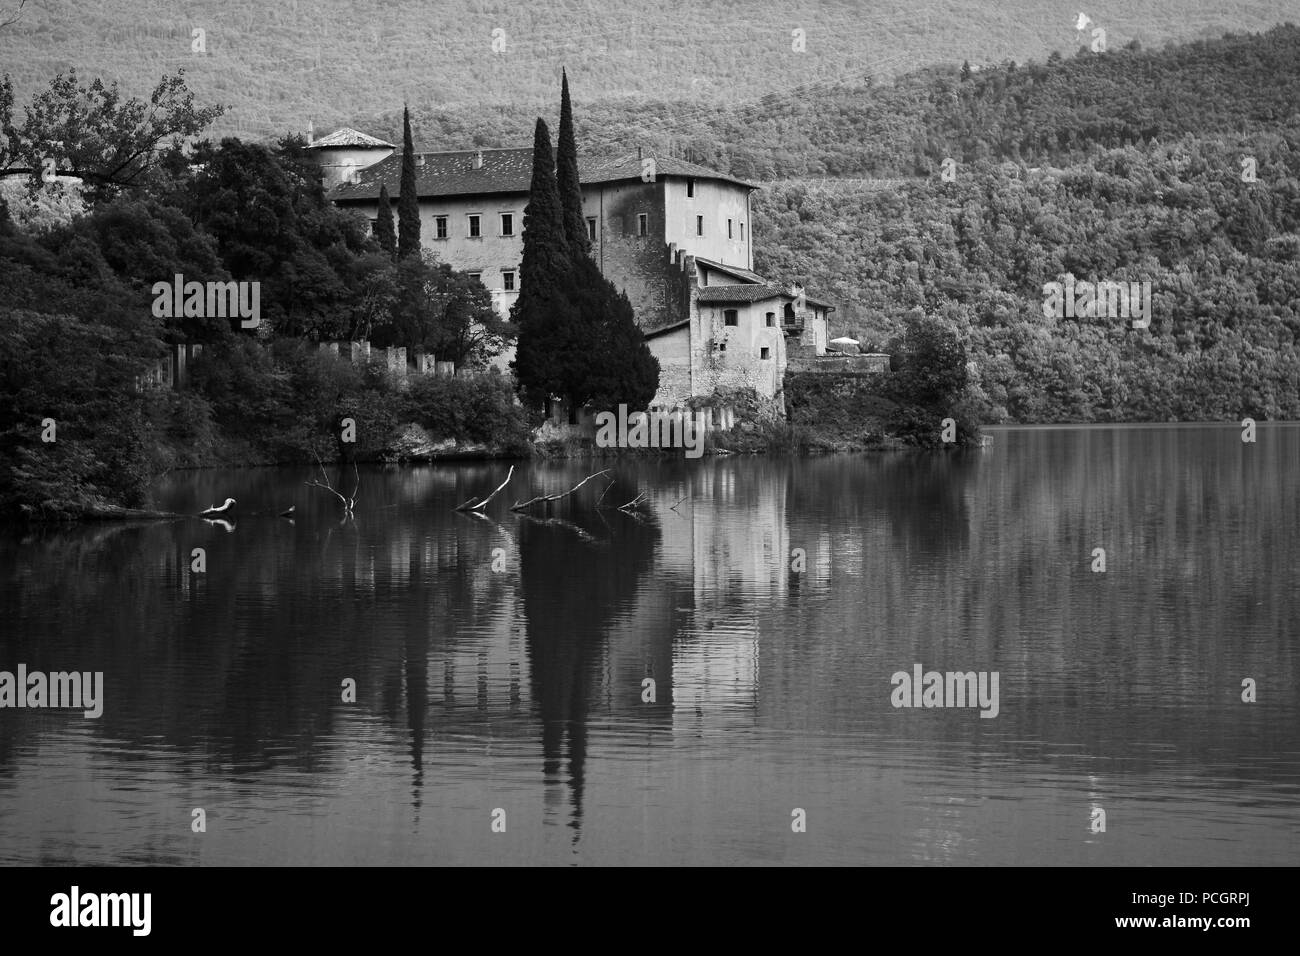 Lo splendido castello e il lago di Toblino a Trento, Italia Foto Stock